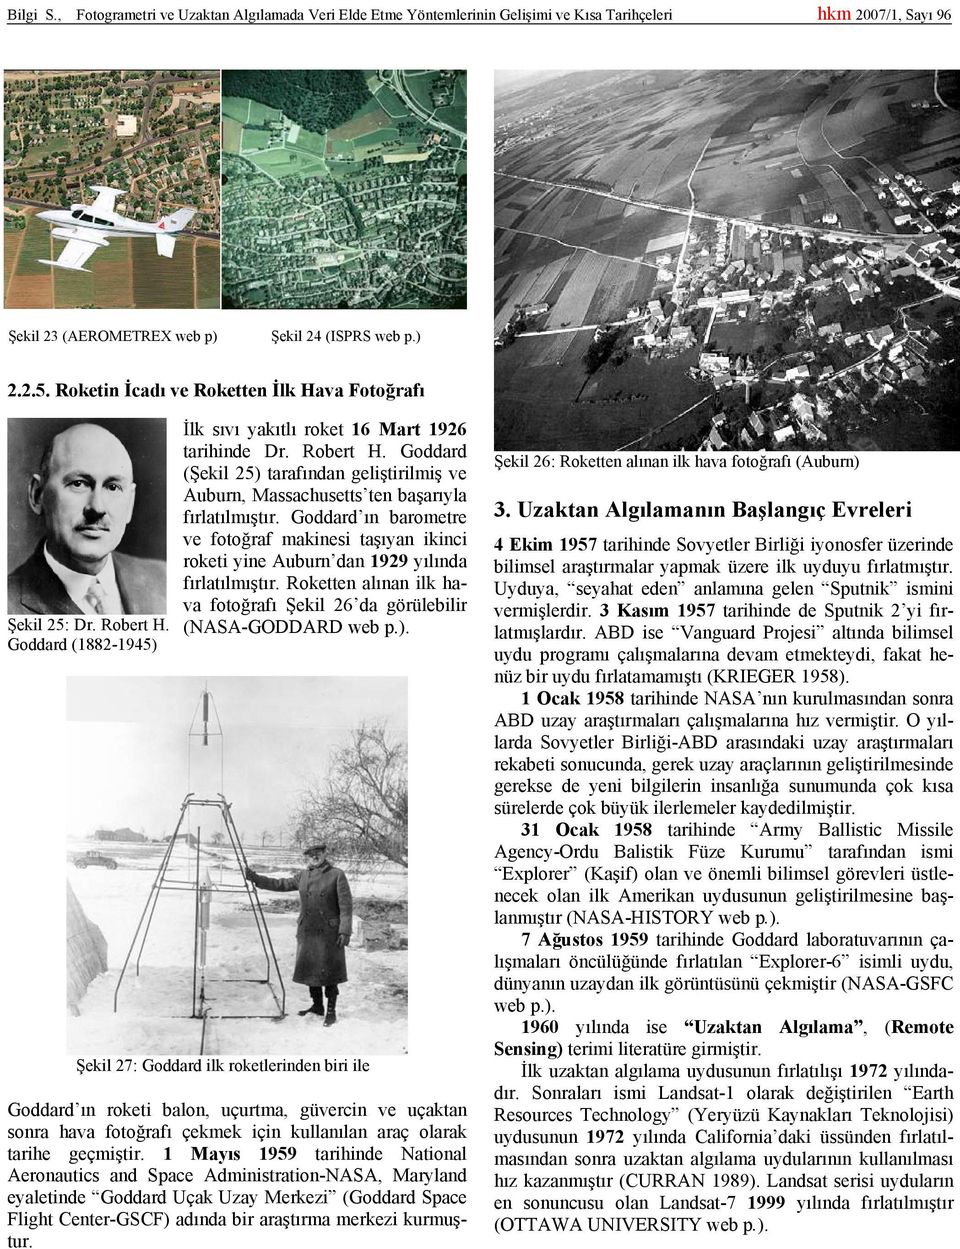 Goddard ın barometre ve fotoğraf makinesi taşıyan ikinci roketi yine Auburn dan 1929 yılında fırlatılmıştır. Roketten alınan ilk hava fotoğrafı Şekil 26 da görülebilir (NASA-GODDARD web p.).